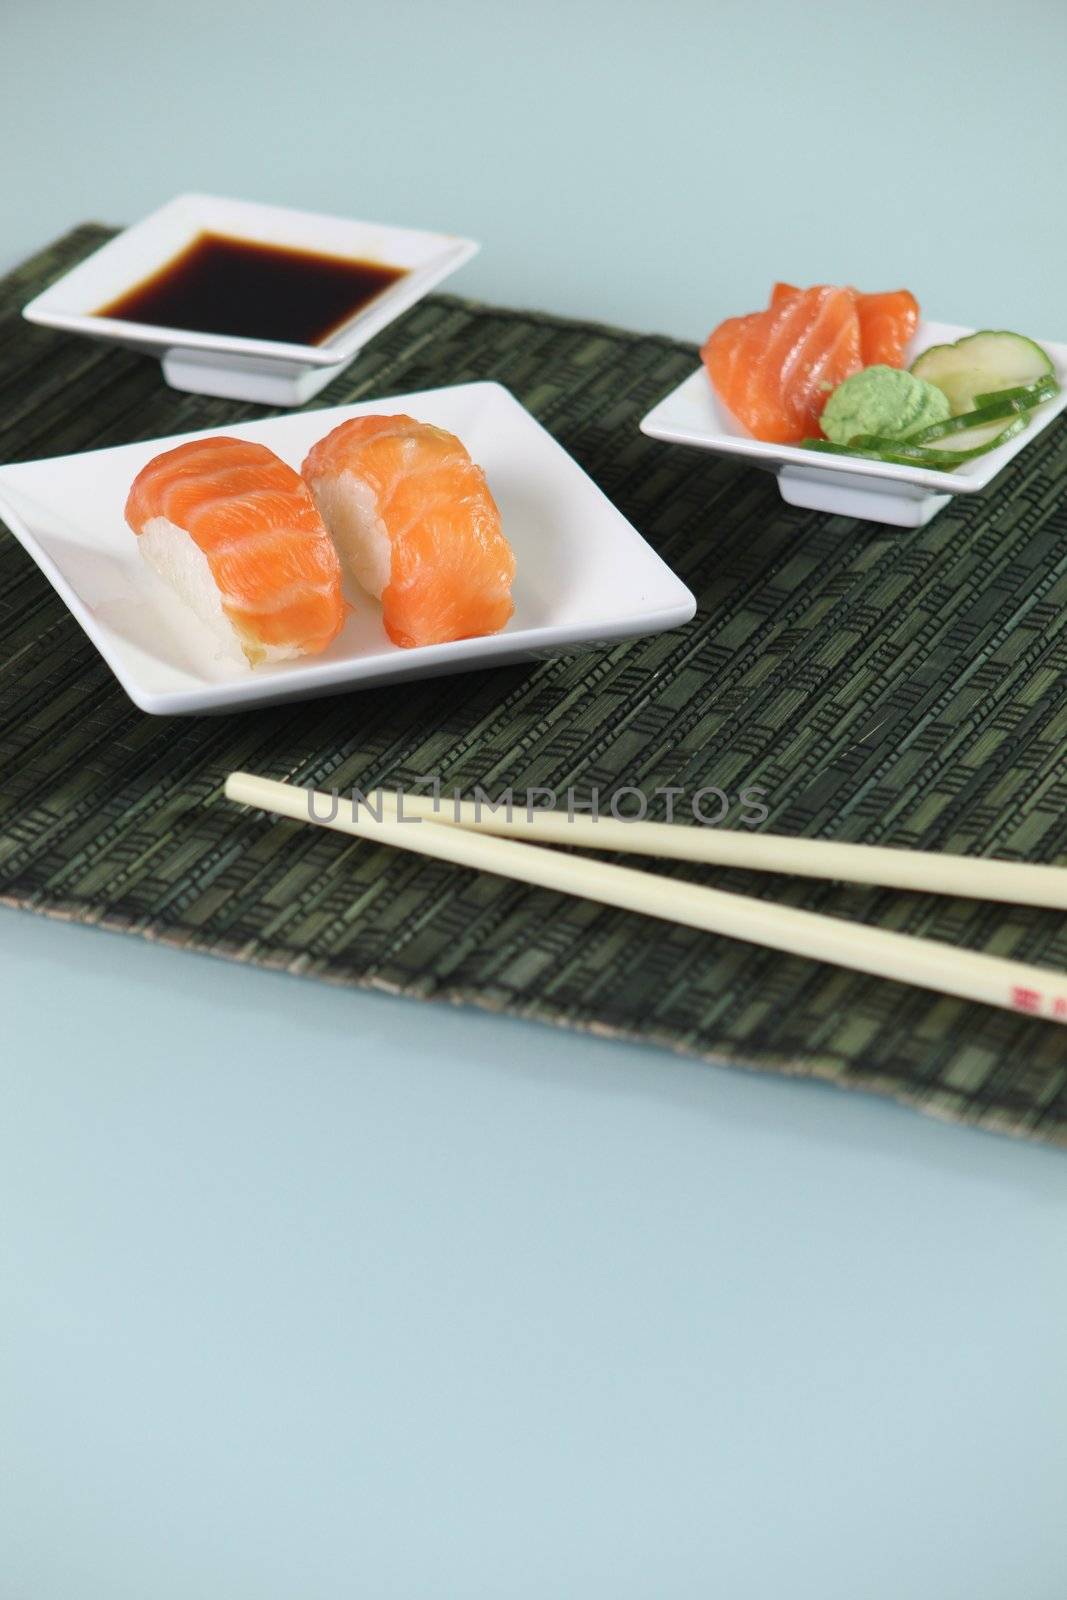 Stylish sushi presentation by phovoir